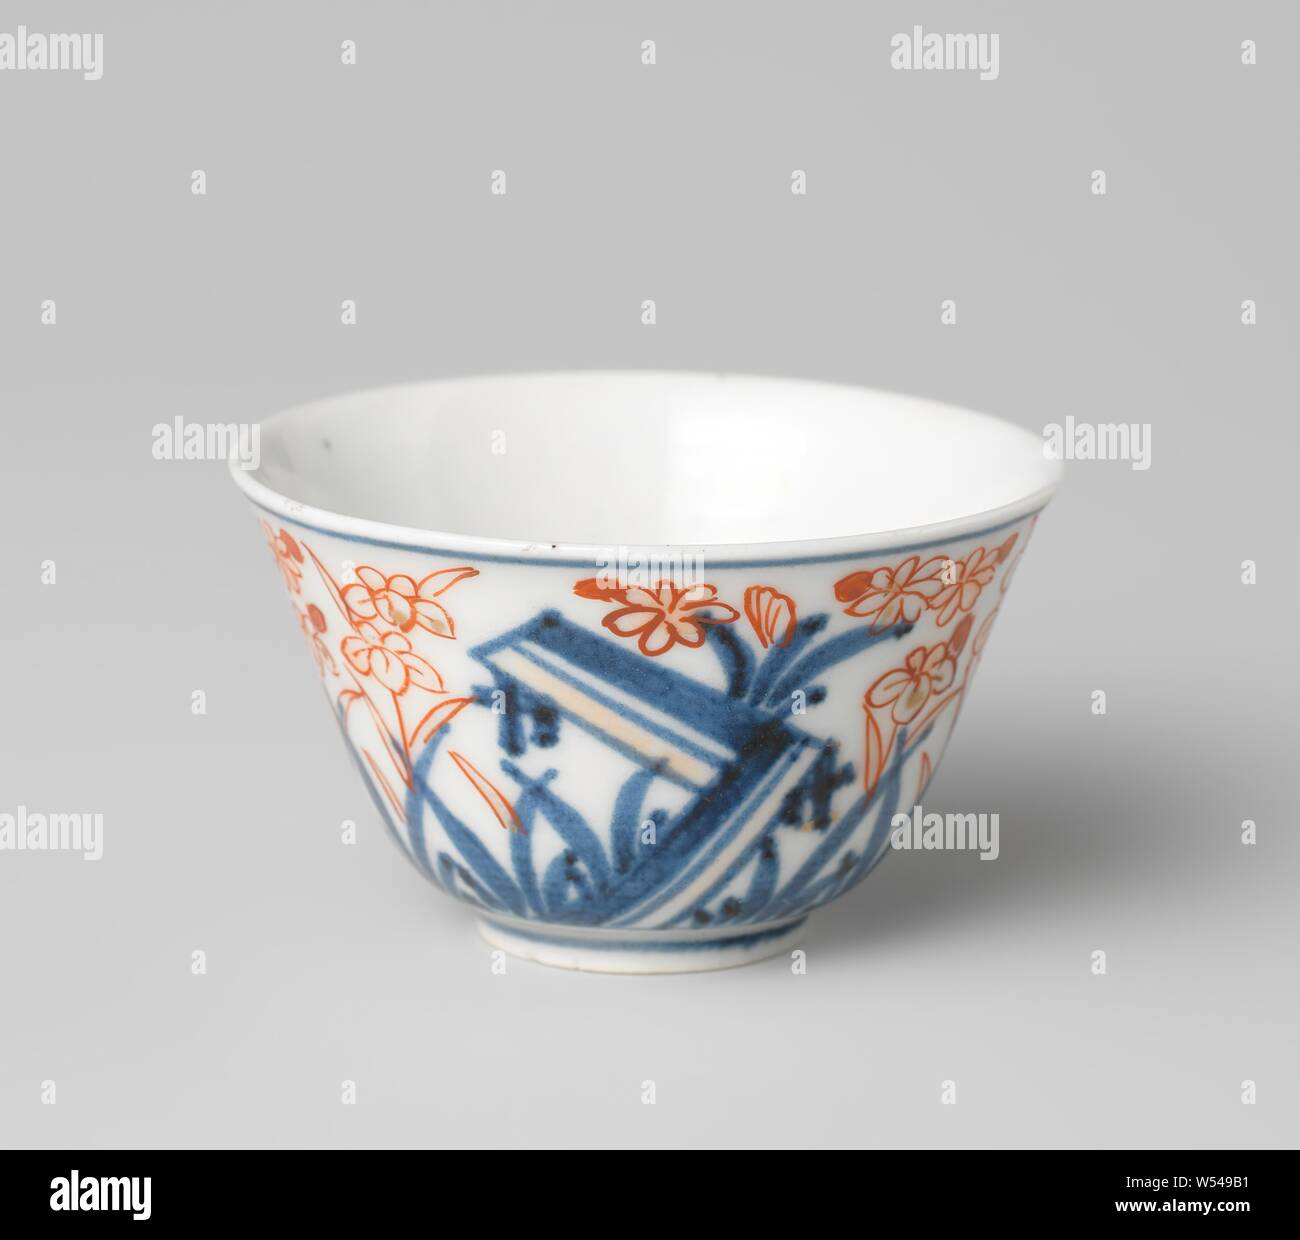 Coupe en forme de cloche avec un spray de fleurs et de plantes à fleurs, en forme de cloche, tasse de porcelaine peinte en bleu sous glaçure et sur l'émail rouge et or. Une fleur branche sur le fond dans un médaillon. Plantes à fleurs sur le mur. Une puce dans le bord de la tête. Imari., anonyme, le Japon, l'c. 1775 - c. 1799, période Edo (1600-1868), Porcelaine, glaçure (matériel), le cobalt (minéral), de l'or (métal), la vitrification, H 3,9 cm d 6,8 cm d 2,7 cm Banque D'Images